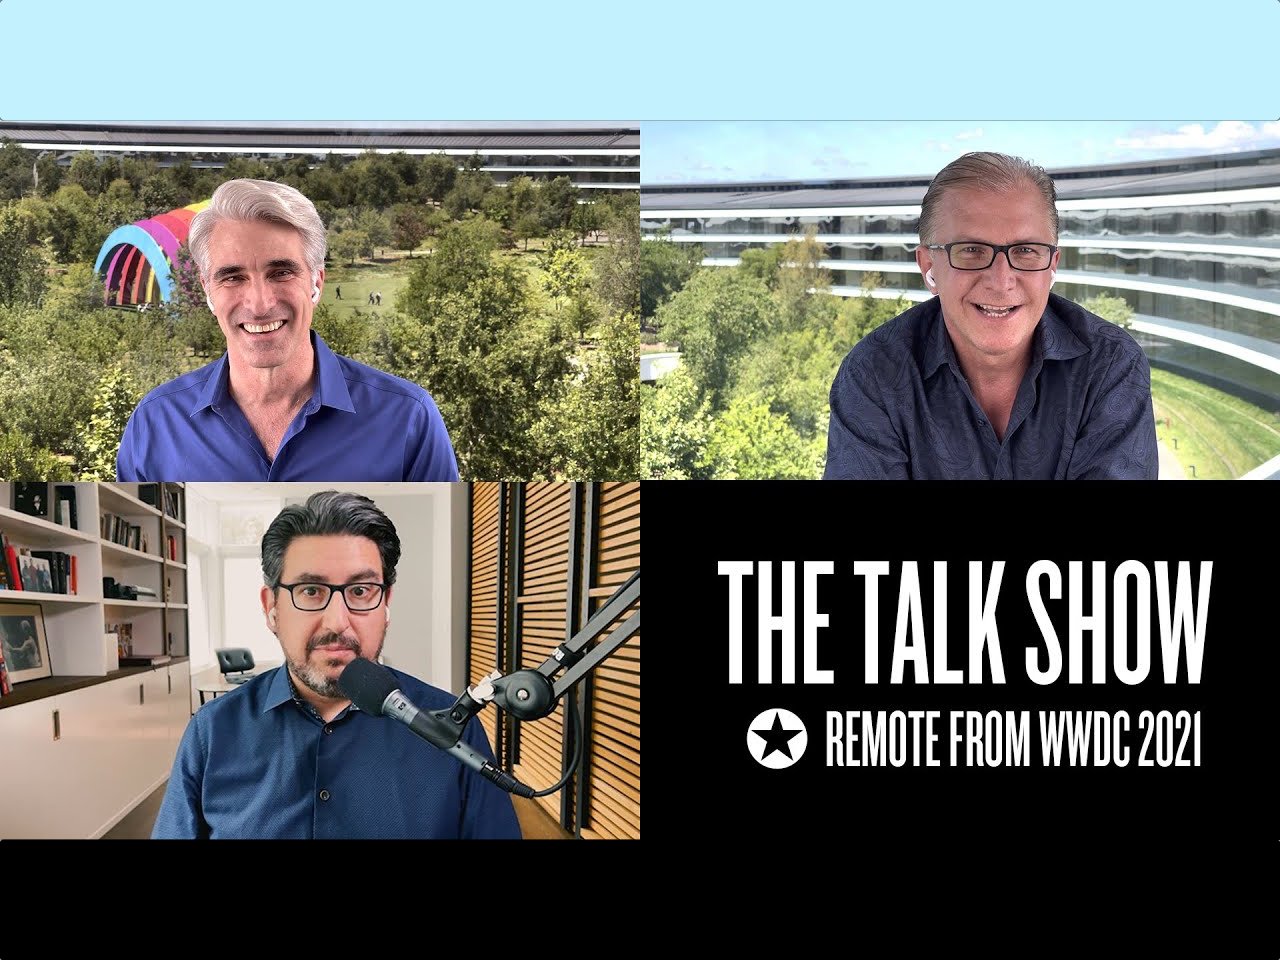 The Talk Show WWDC 2021